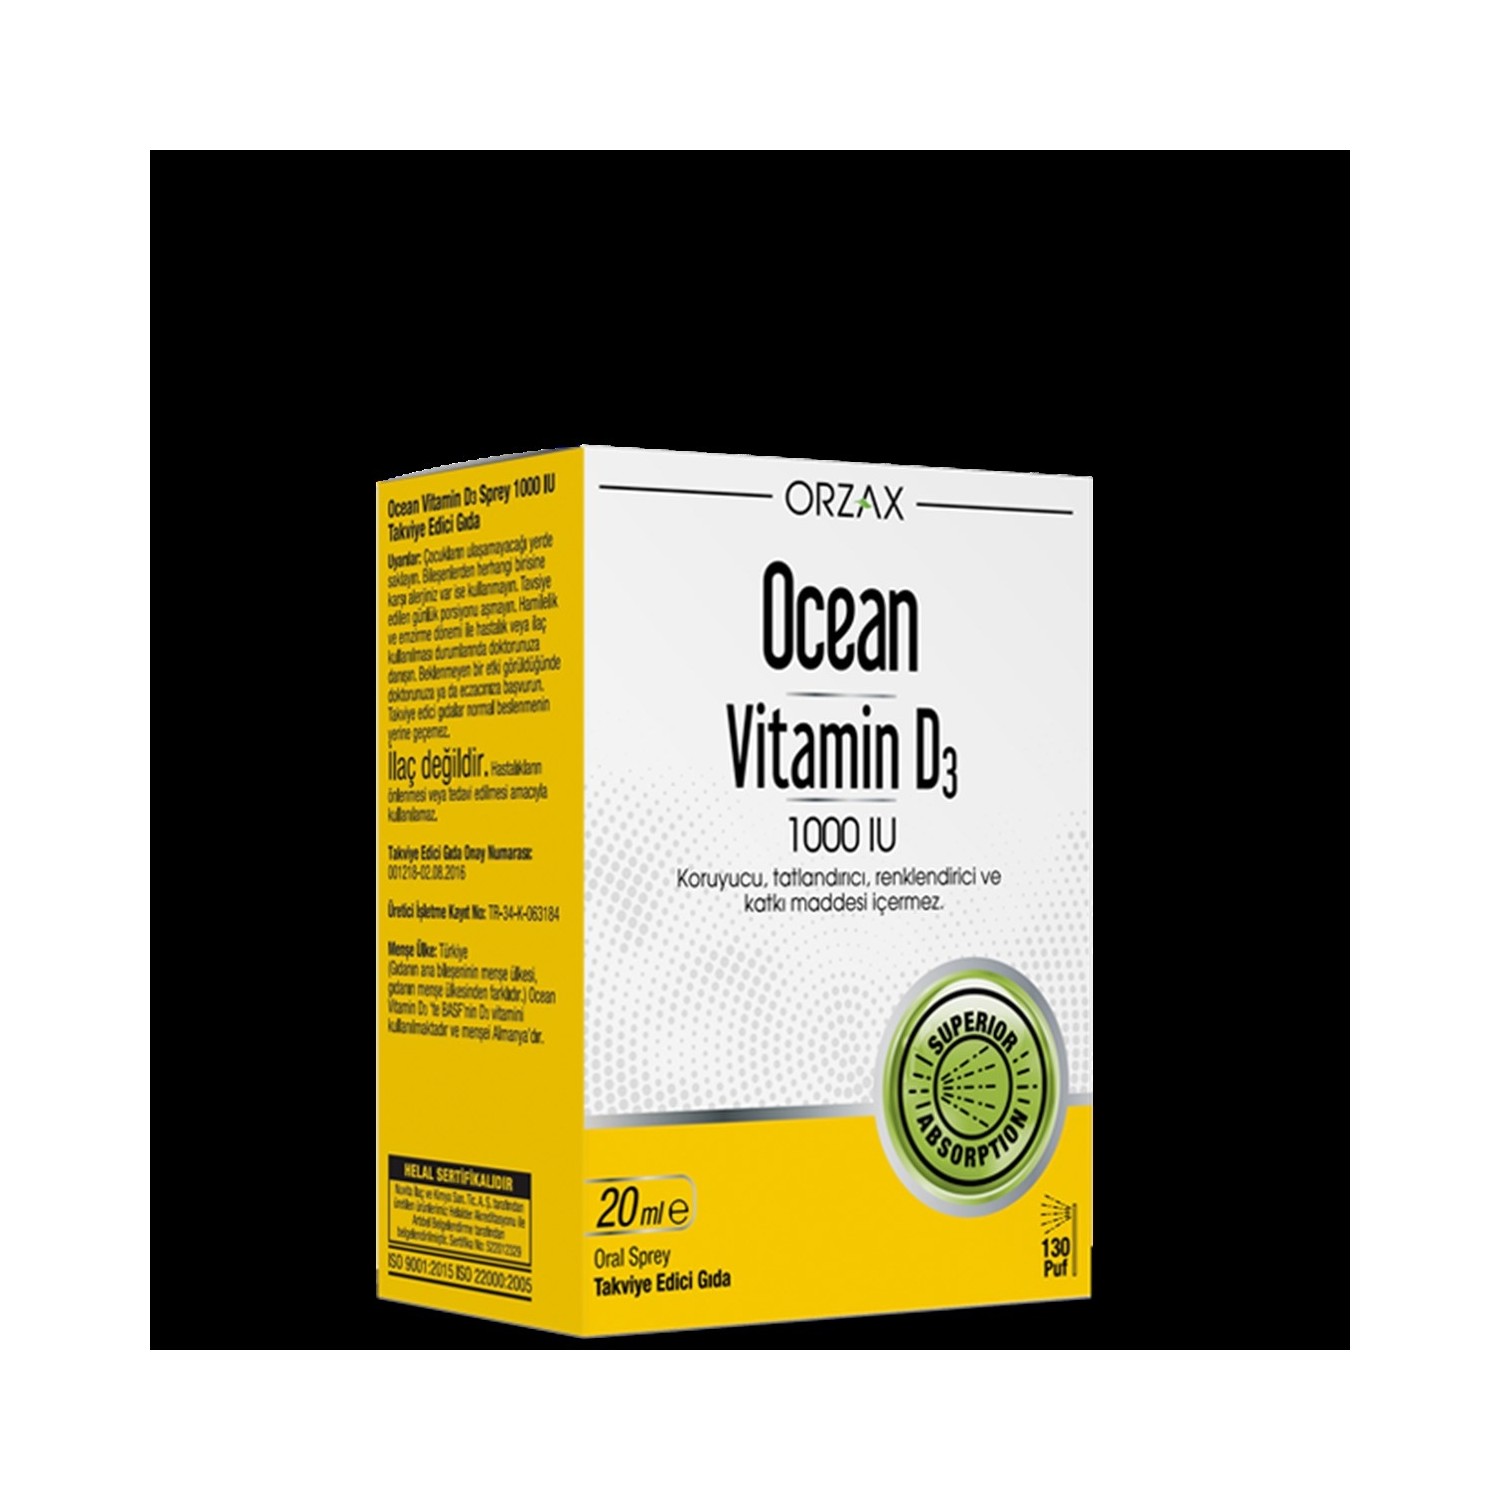 цена Спрей Витамин D3 Ocean Orzax 1000 МЕ, 20 мл